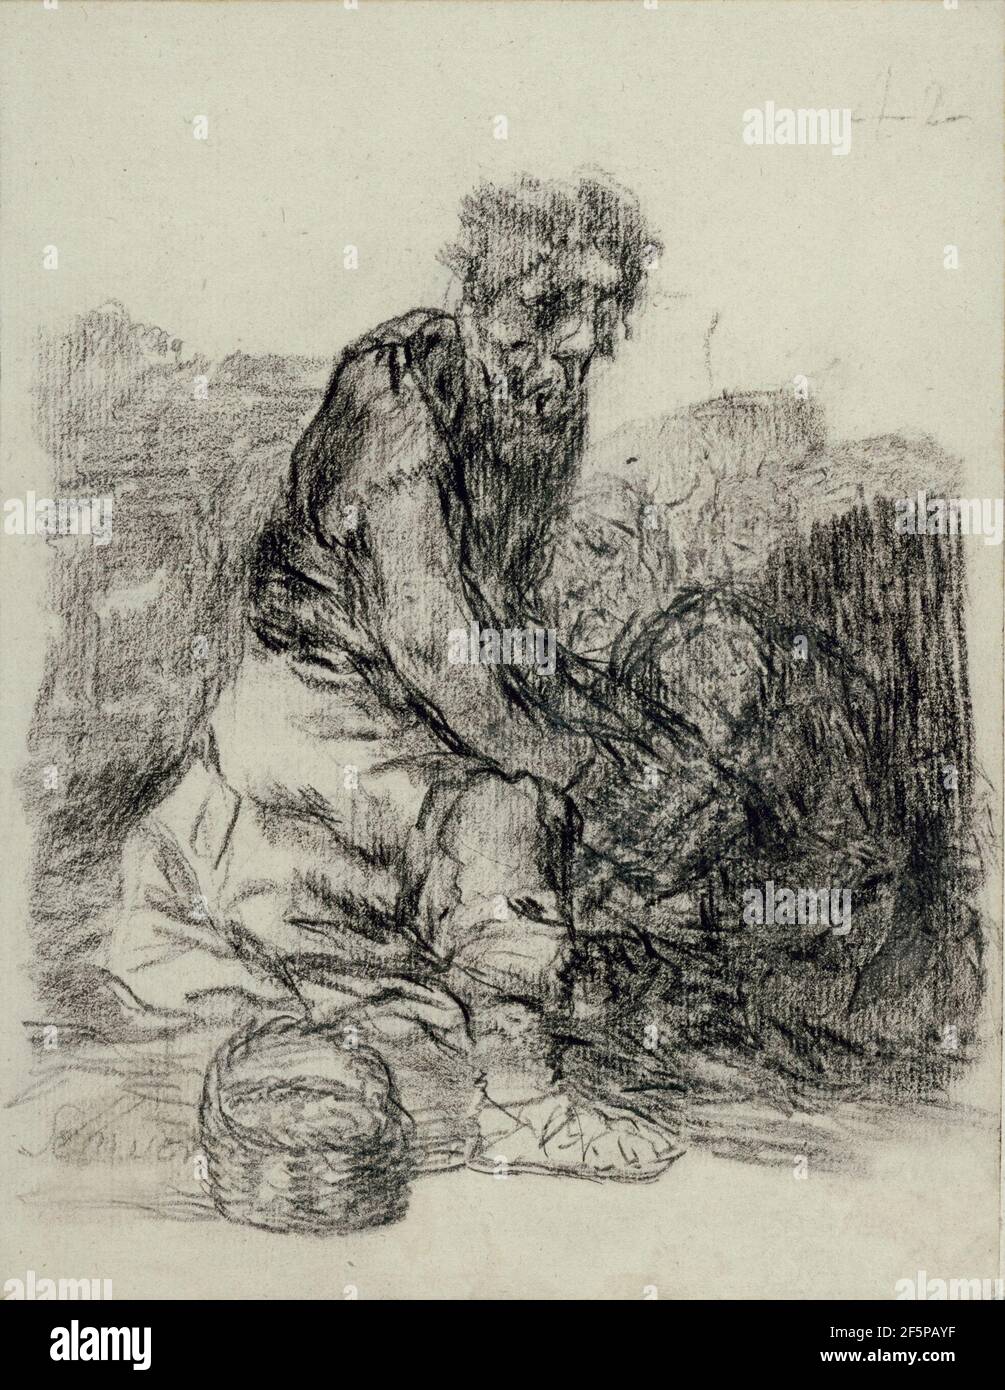 Stanno morendo. Francisco José de Goya y Lucientes (Francisco de Goya) (Spagnolo, 1746 - 1828) Foto Stock